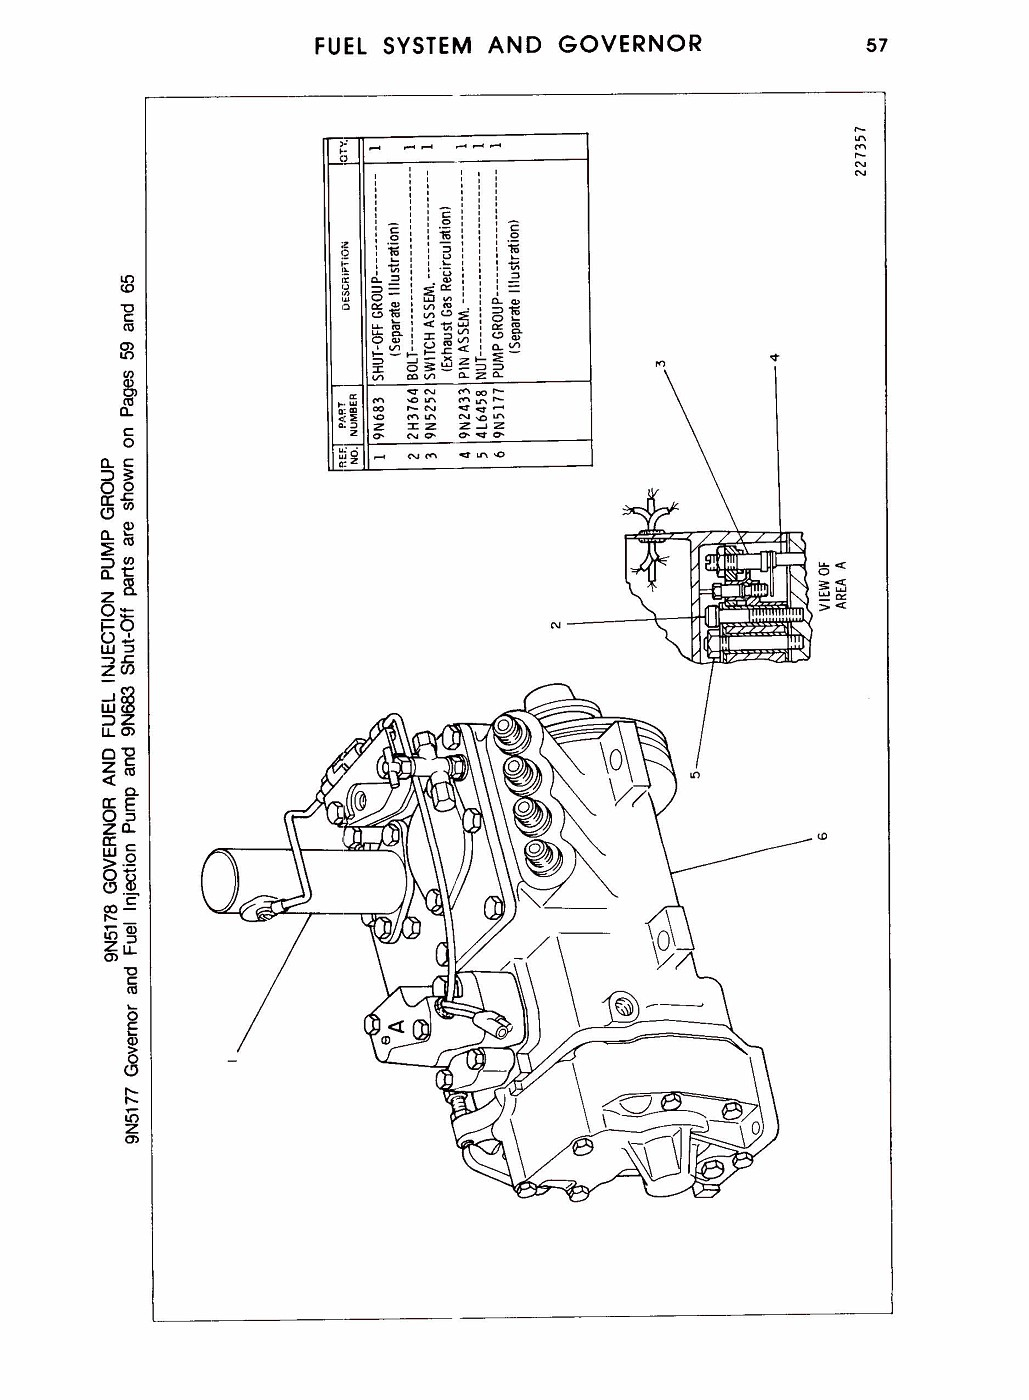 Wiring Diagram Cat 3208 Fuel System Diagram